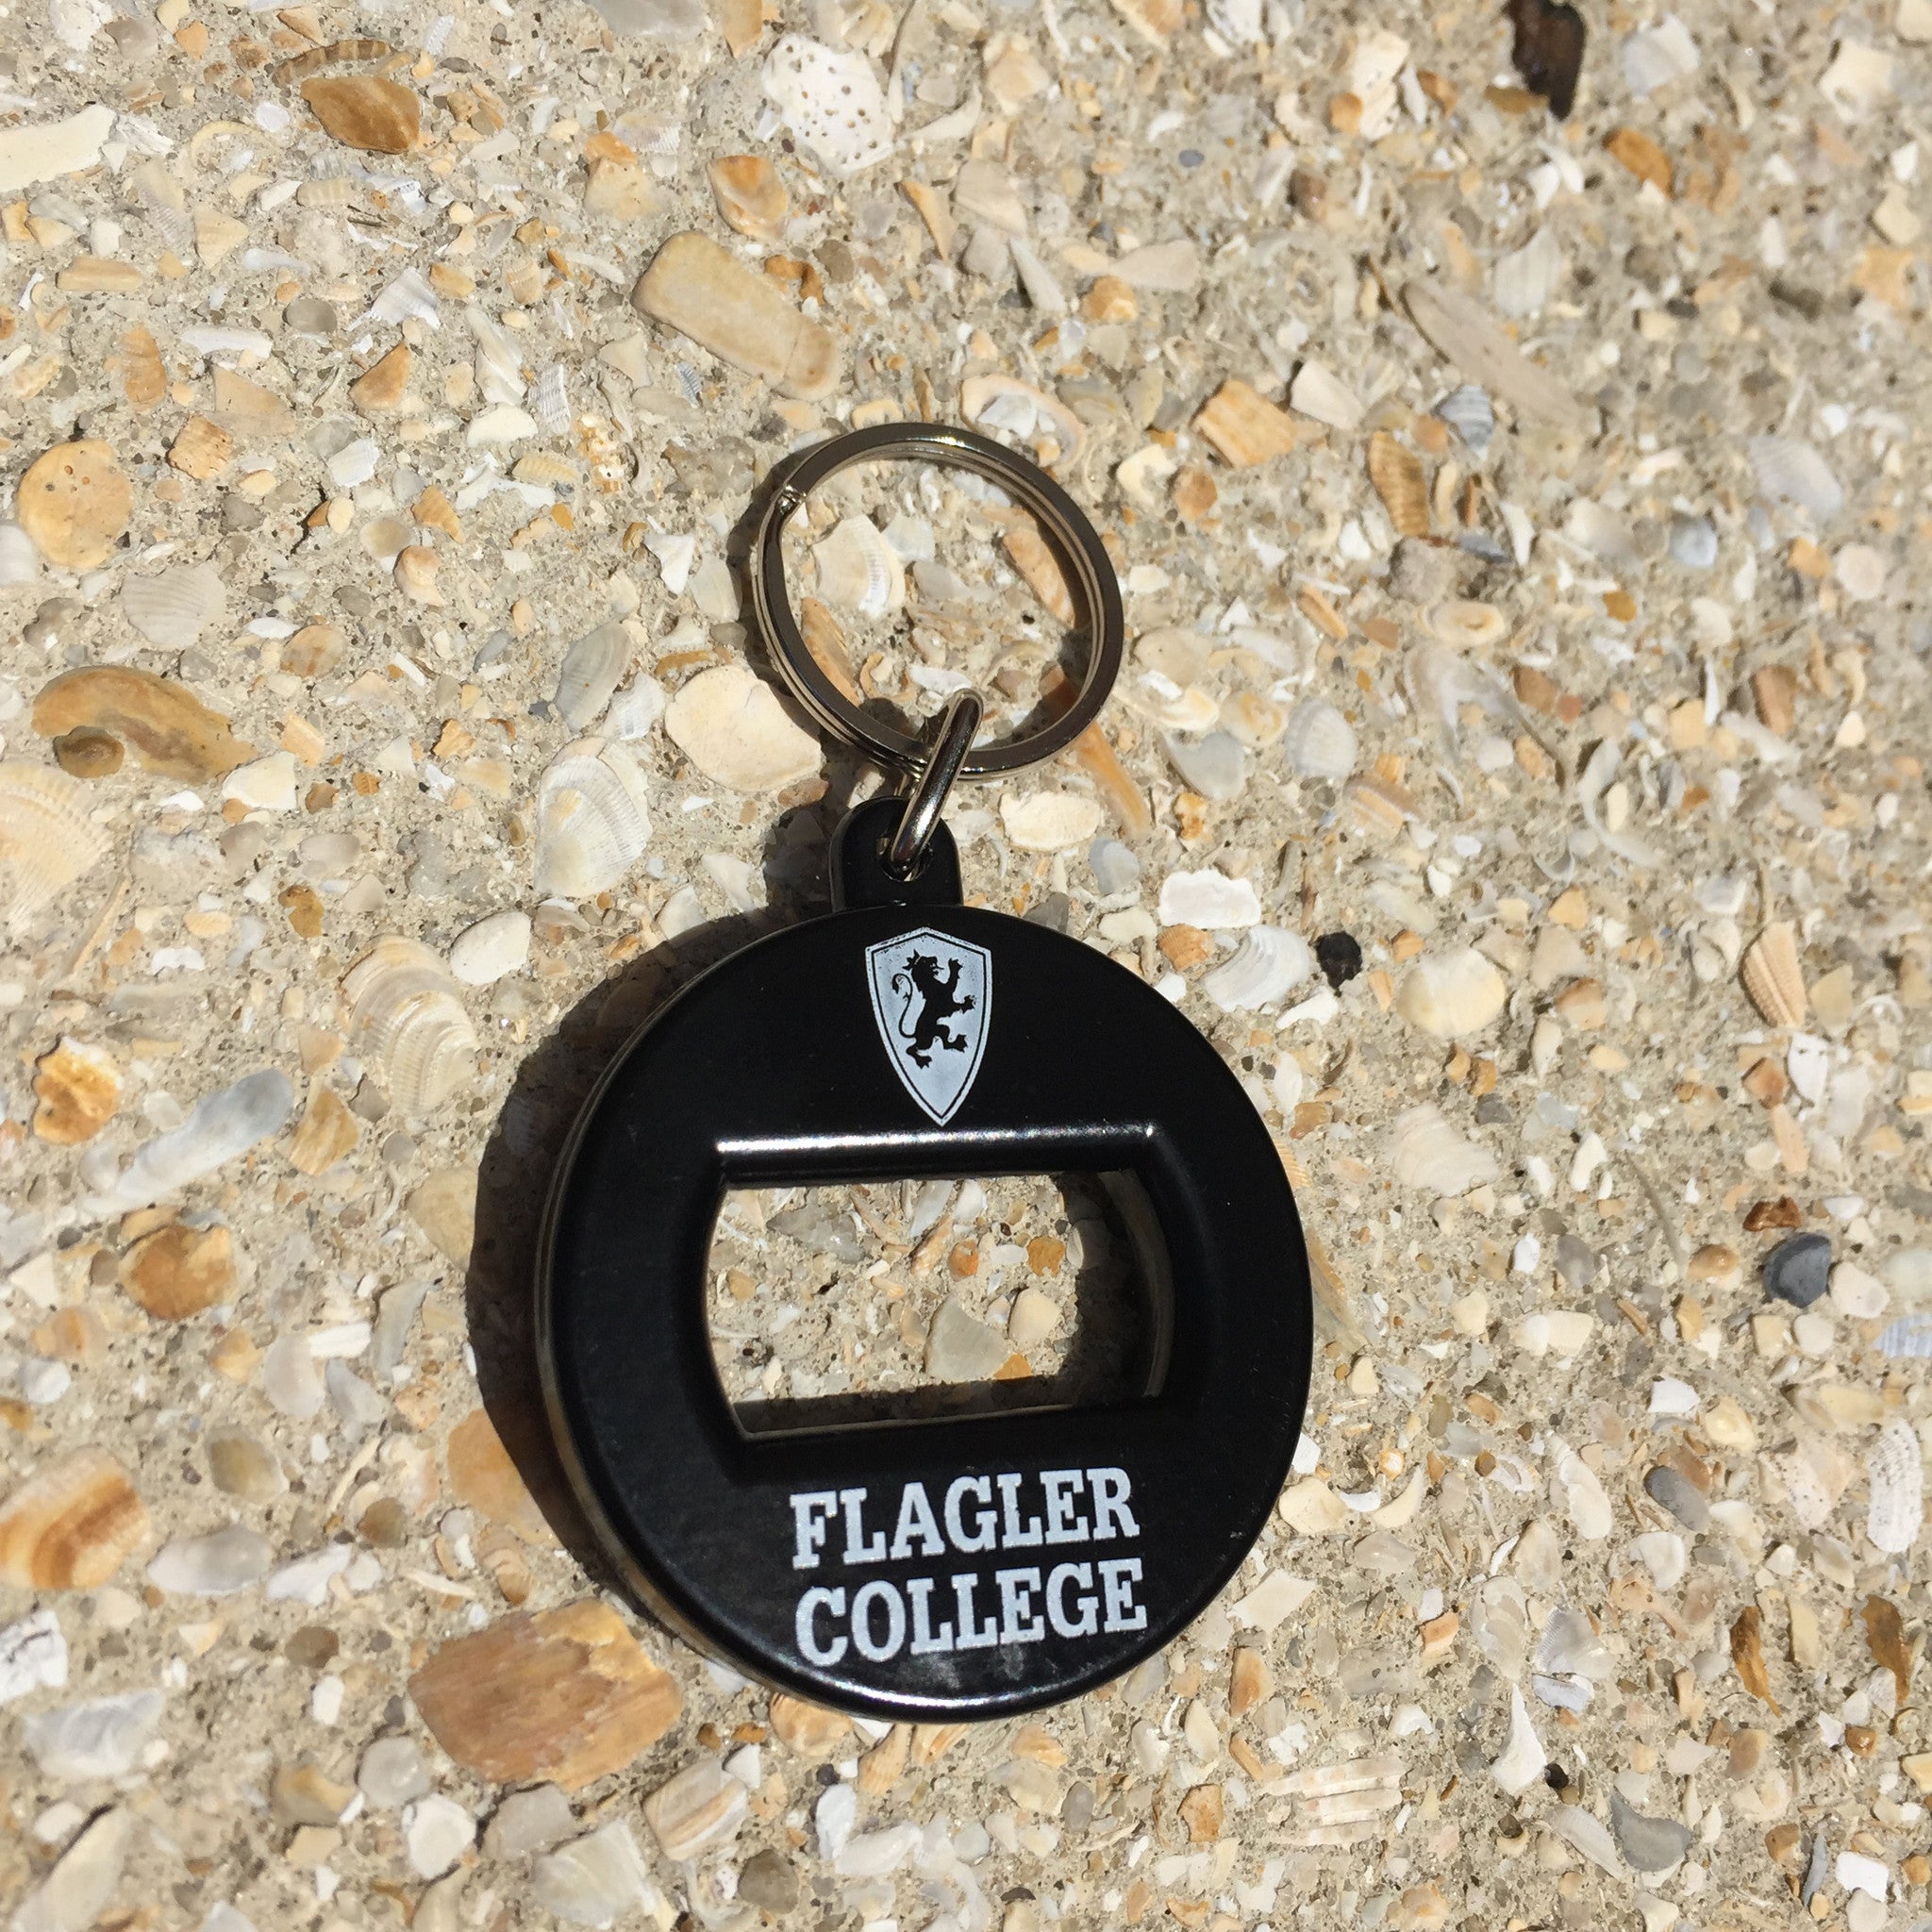 Black Flagler College bottle opener keytag